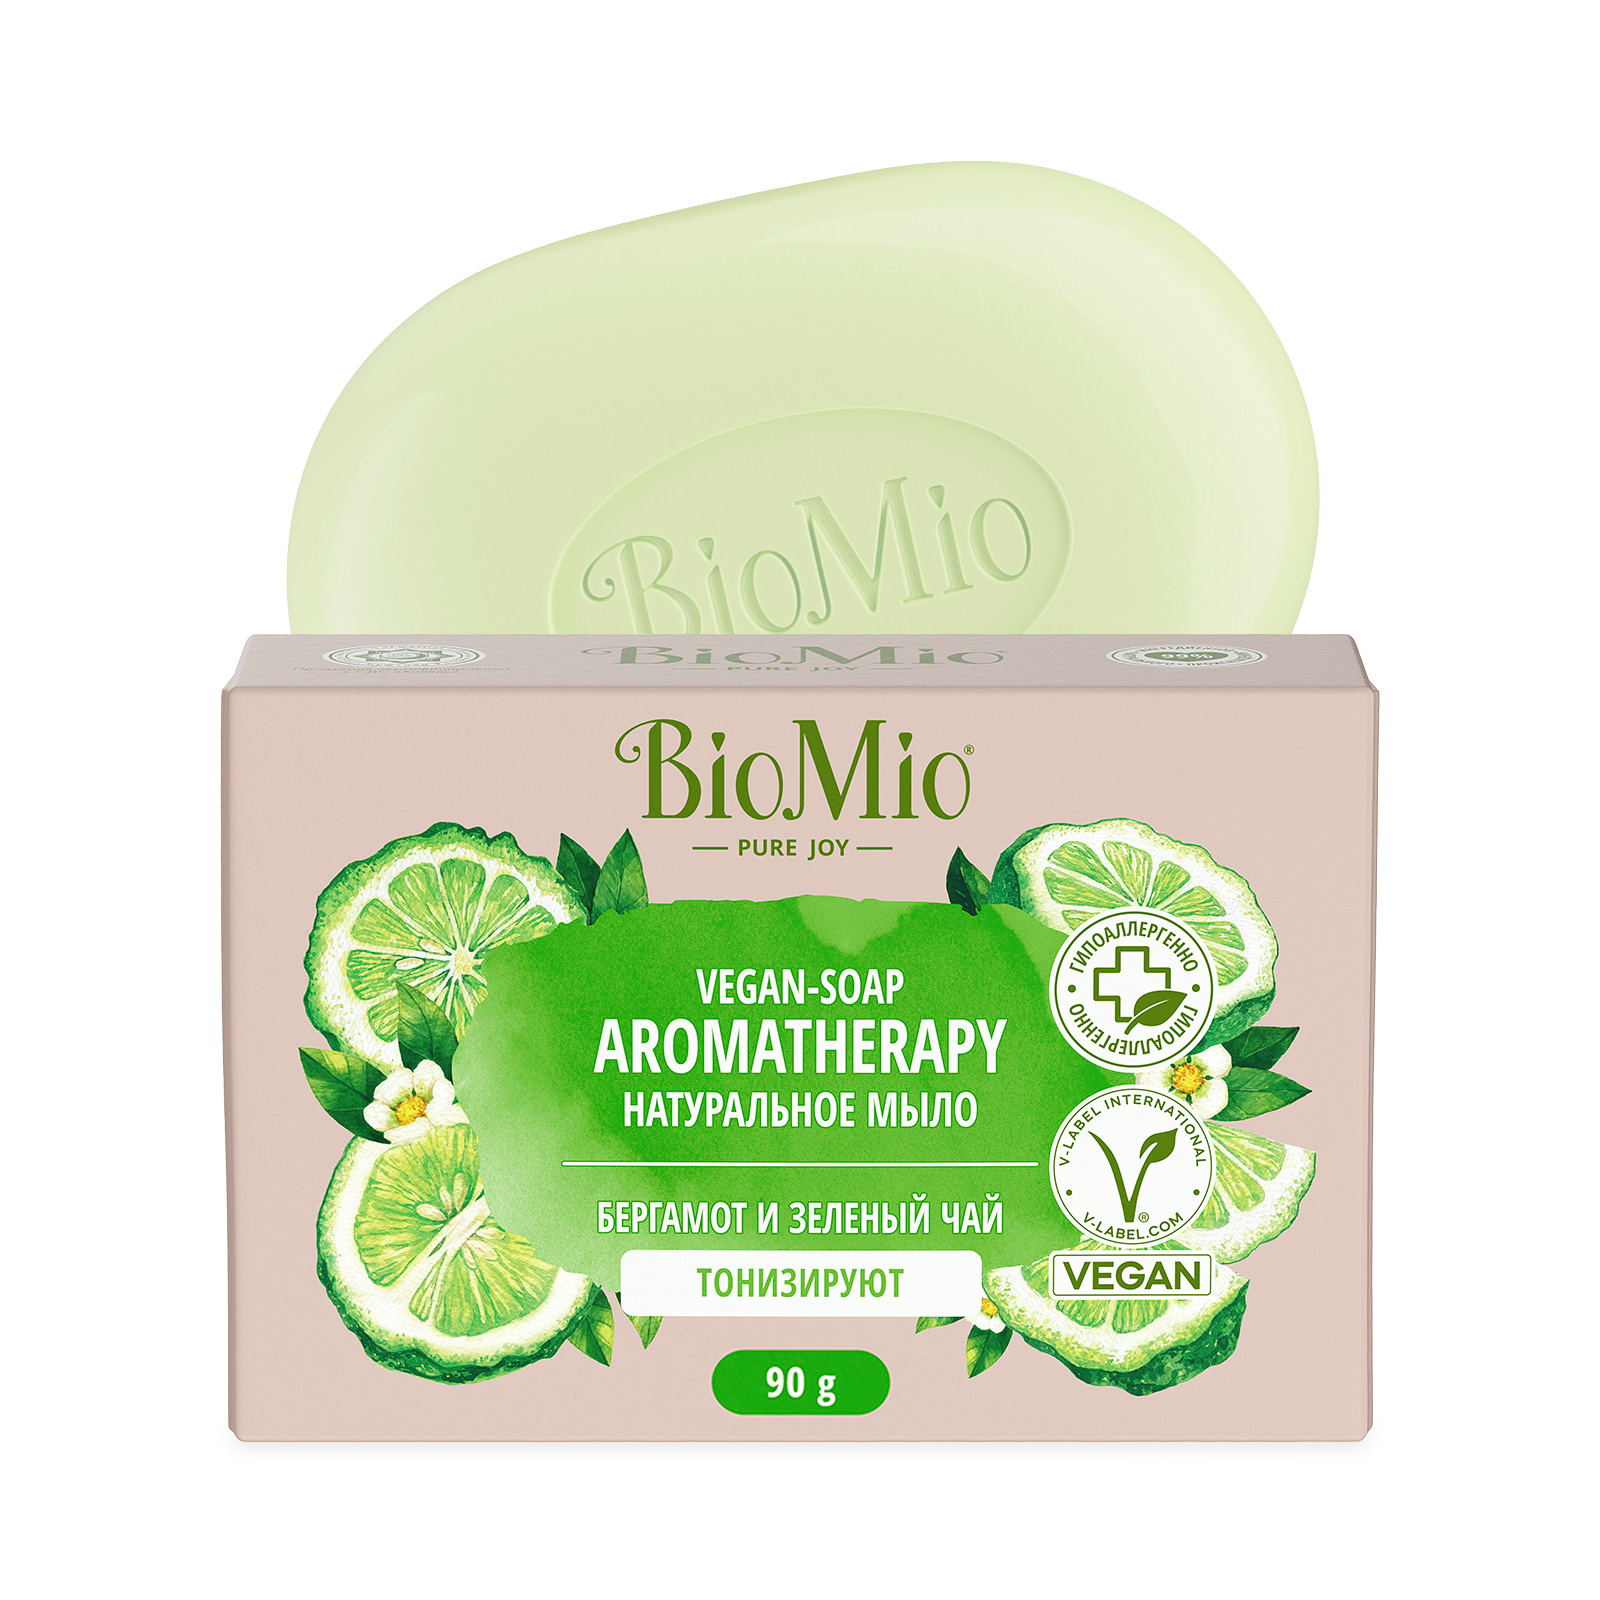 Мыло натуральное BioMio зеленый чай и эфирное масло бергамота 90 г - фото 1